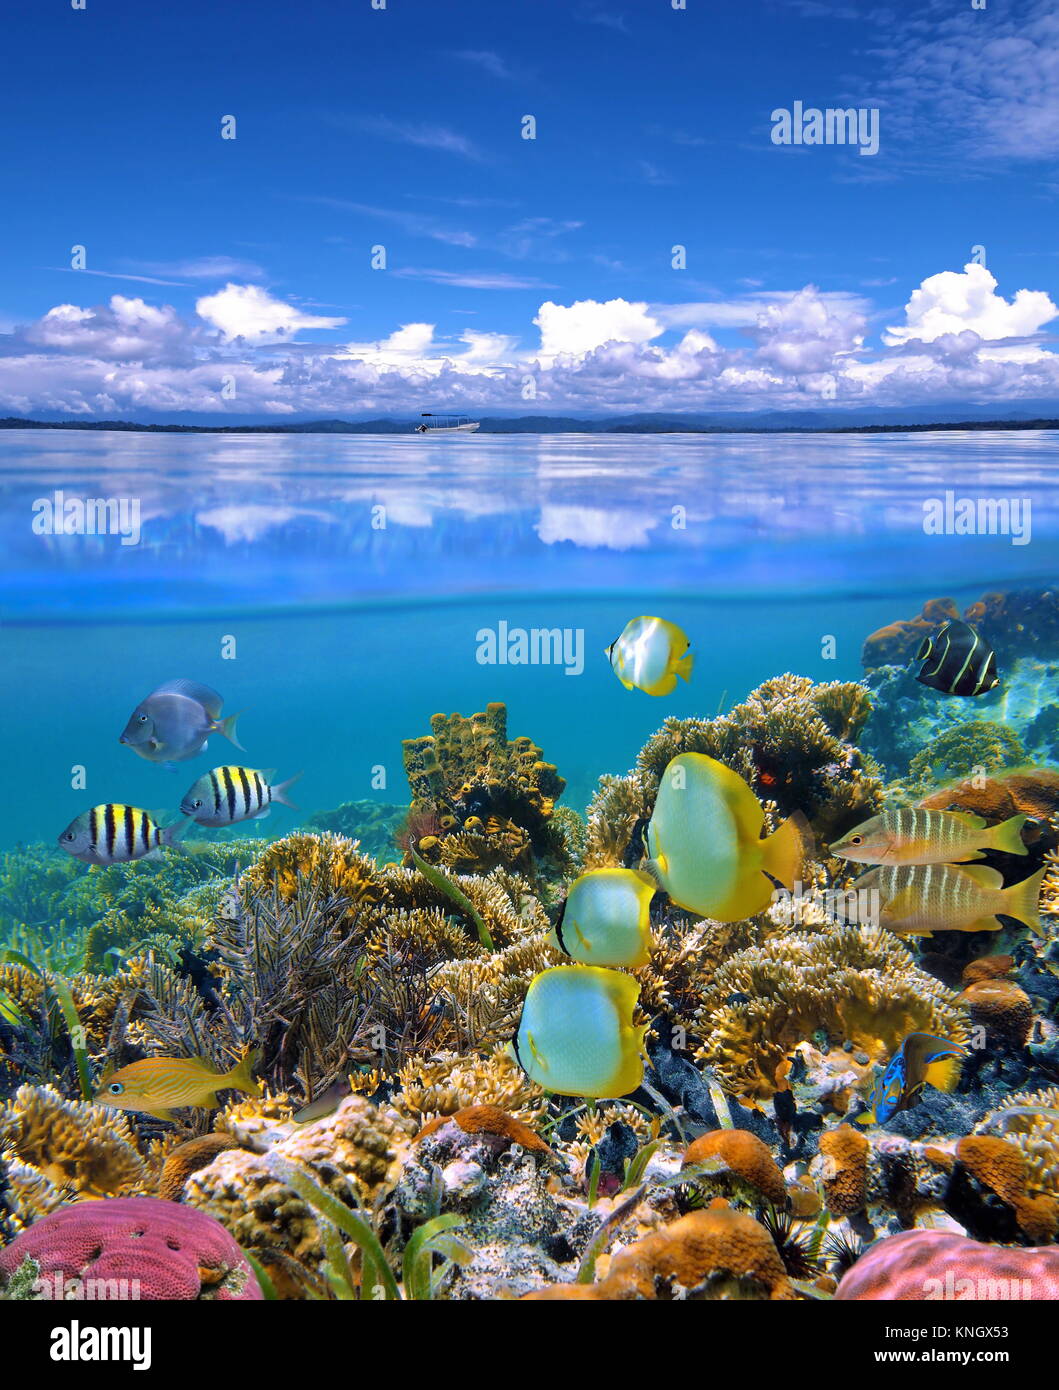 Sur et sous la mer avec ciel nuageux ciel bleu reflété sur l'eau en surface et sous un récif de corail colorés de poissons tropicaux Banque D'Images